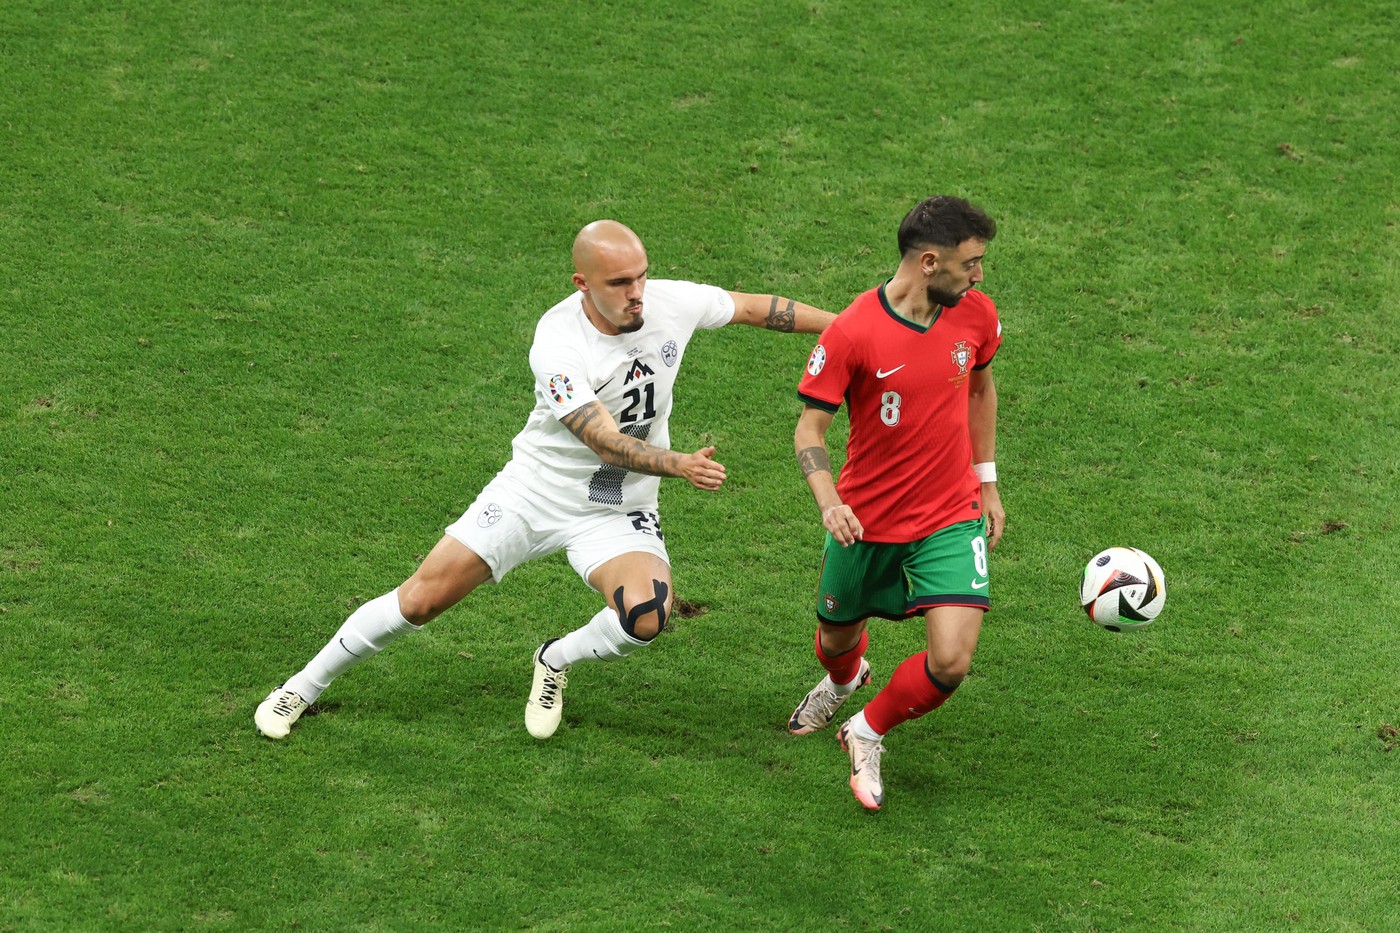 Portugalia - Slovenia 0-0, ACUM, pe digisport.ro. Meci între echipe despărțite de 51 de locuri